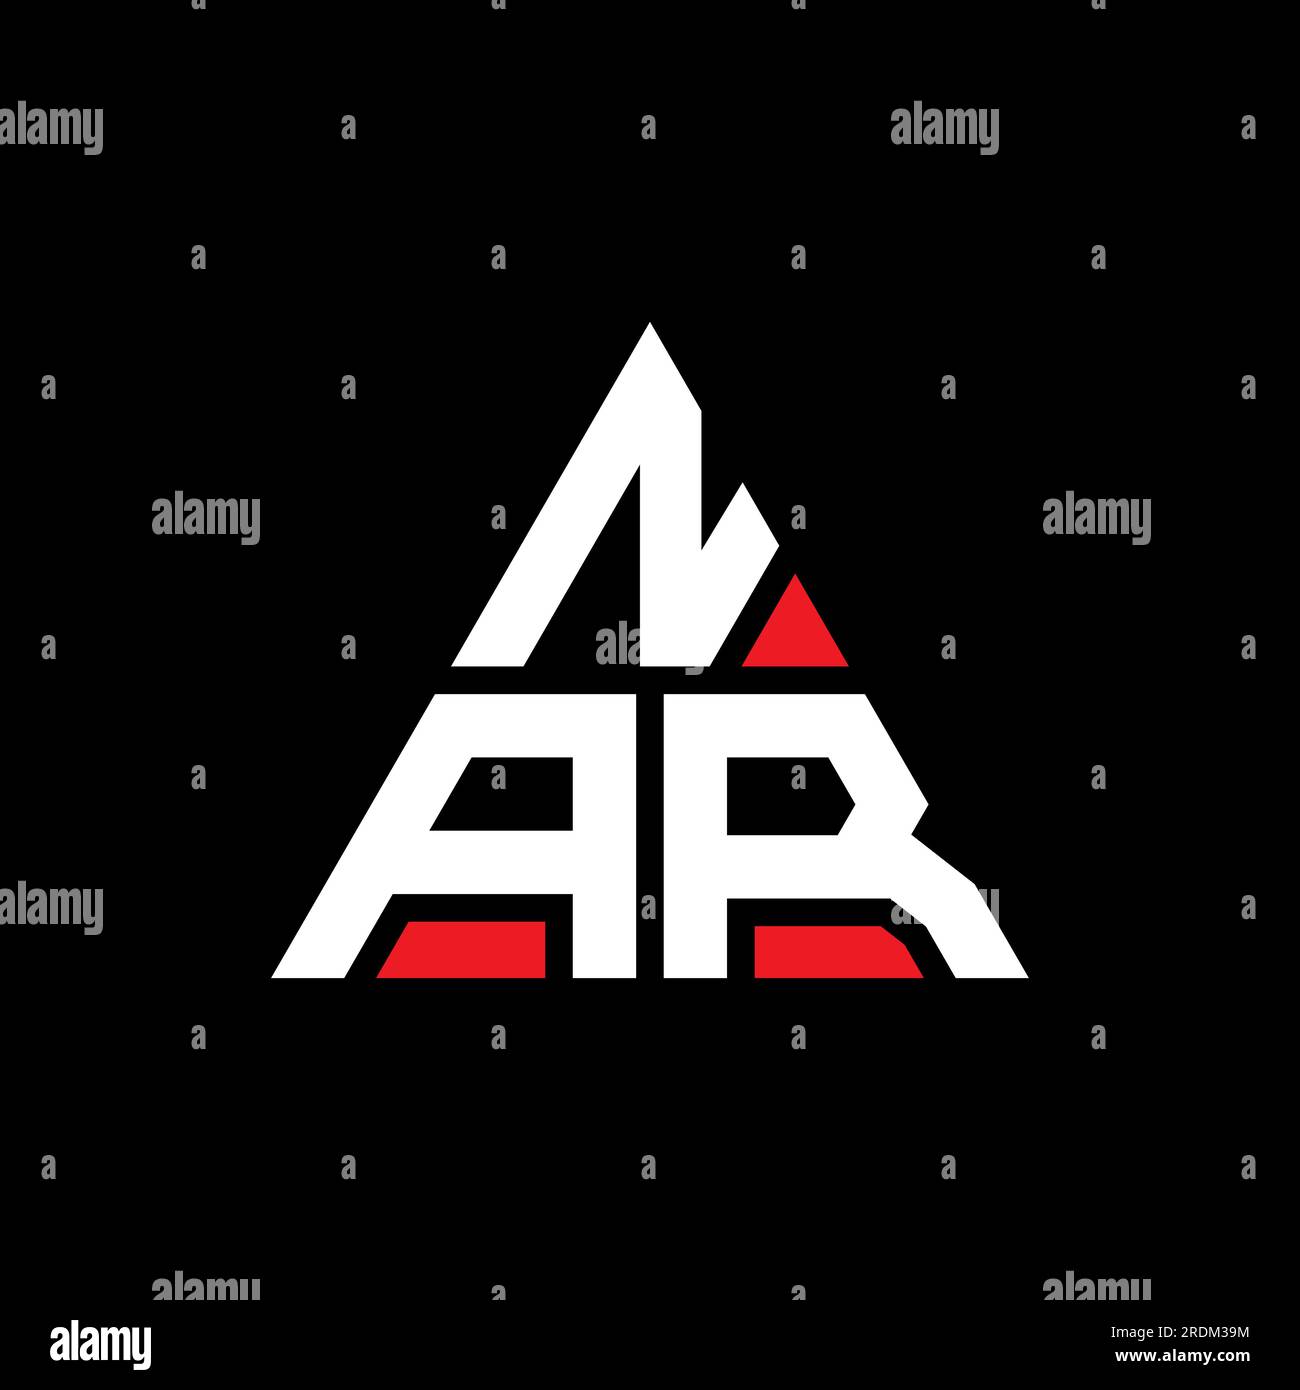 Nar letter logo design on black background Vector Image